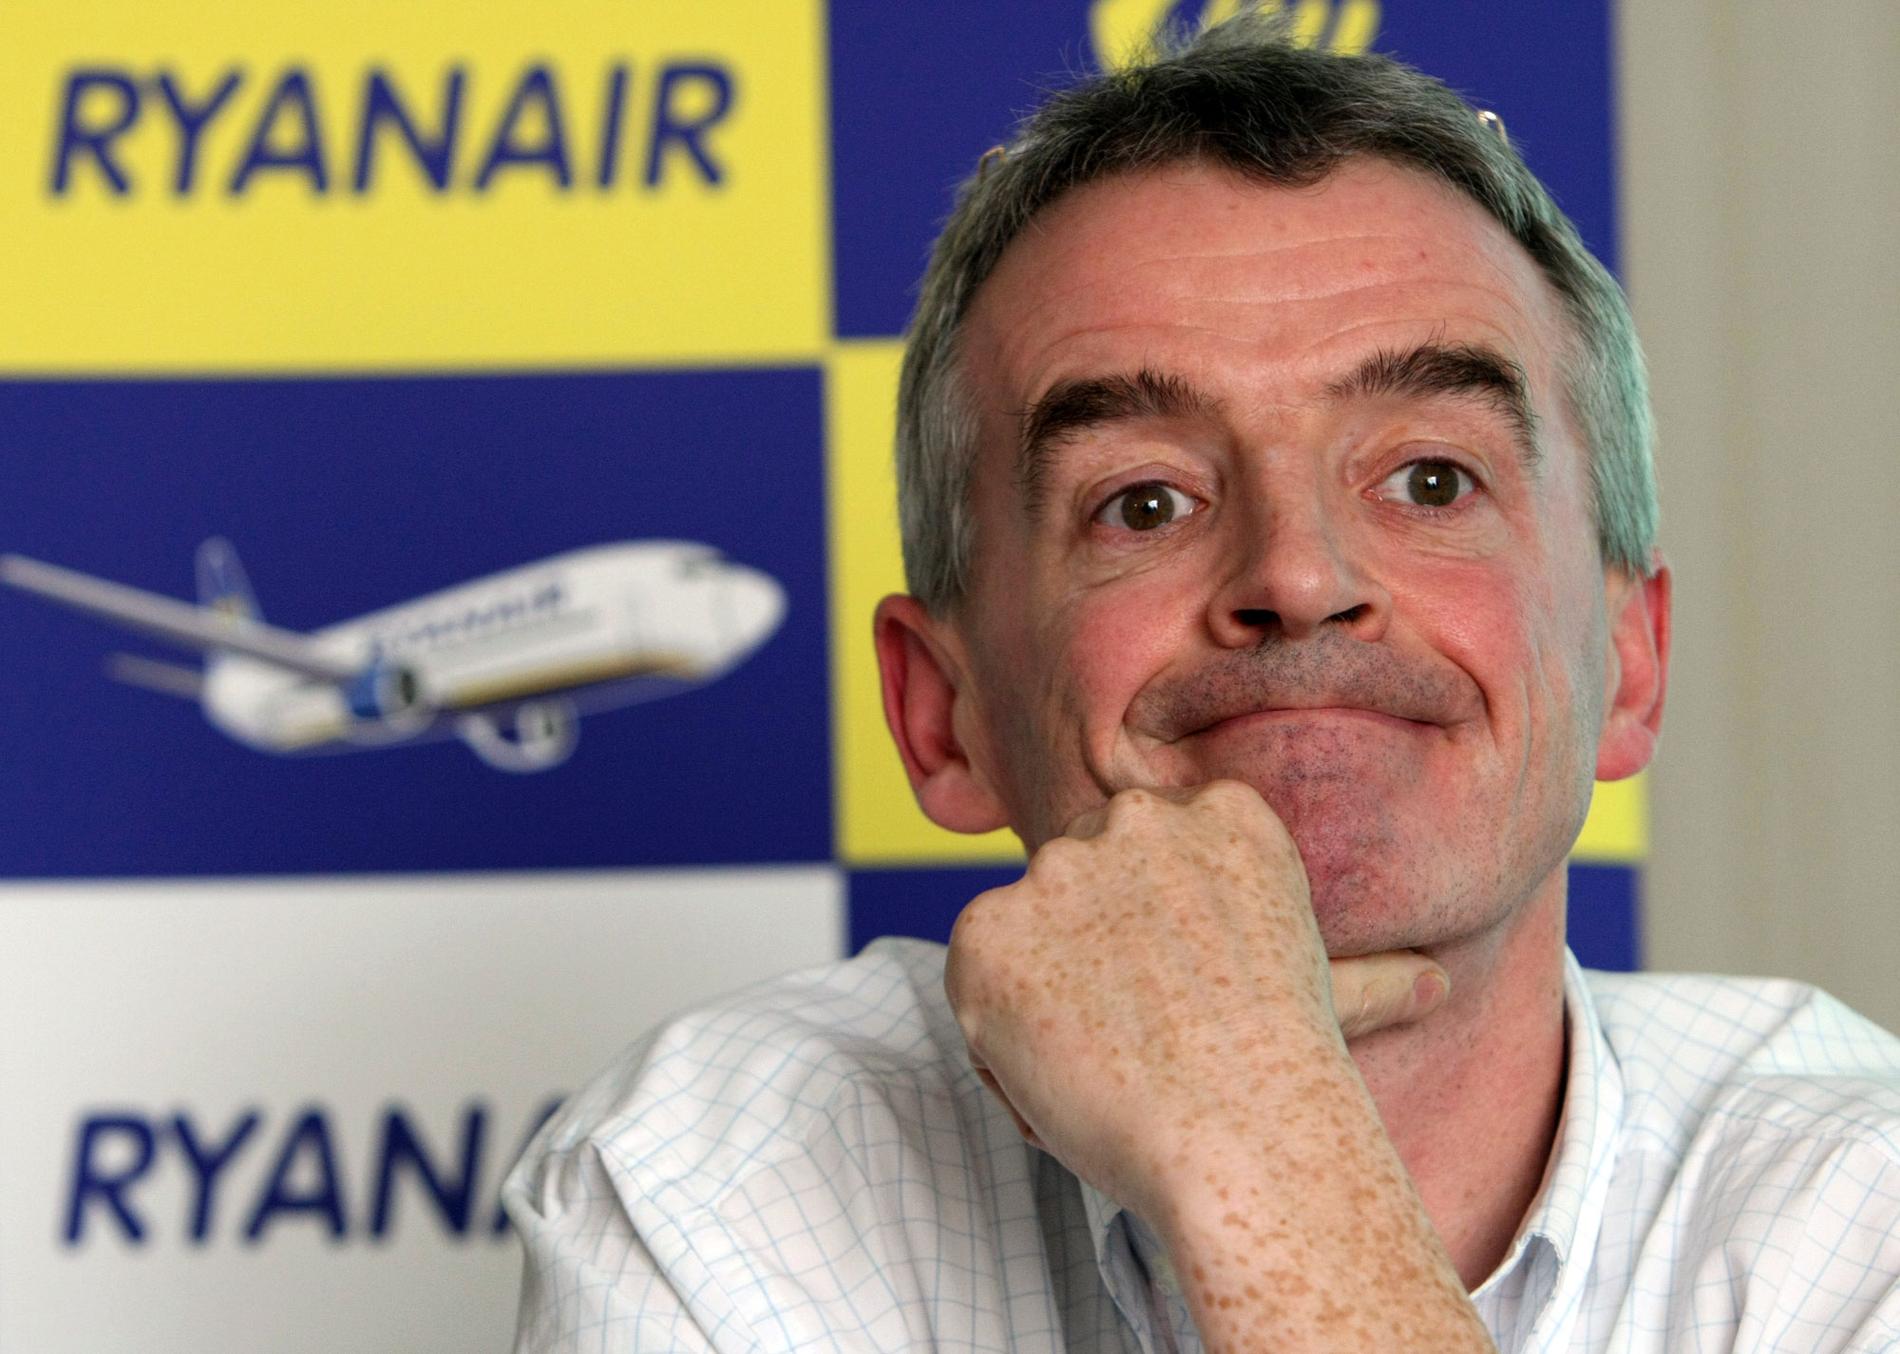 Ryanairchefen Michael O´Leary vill utmana Norwegian och SAS på deras hemmaplaner.